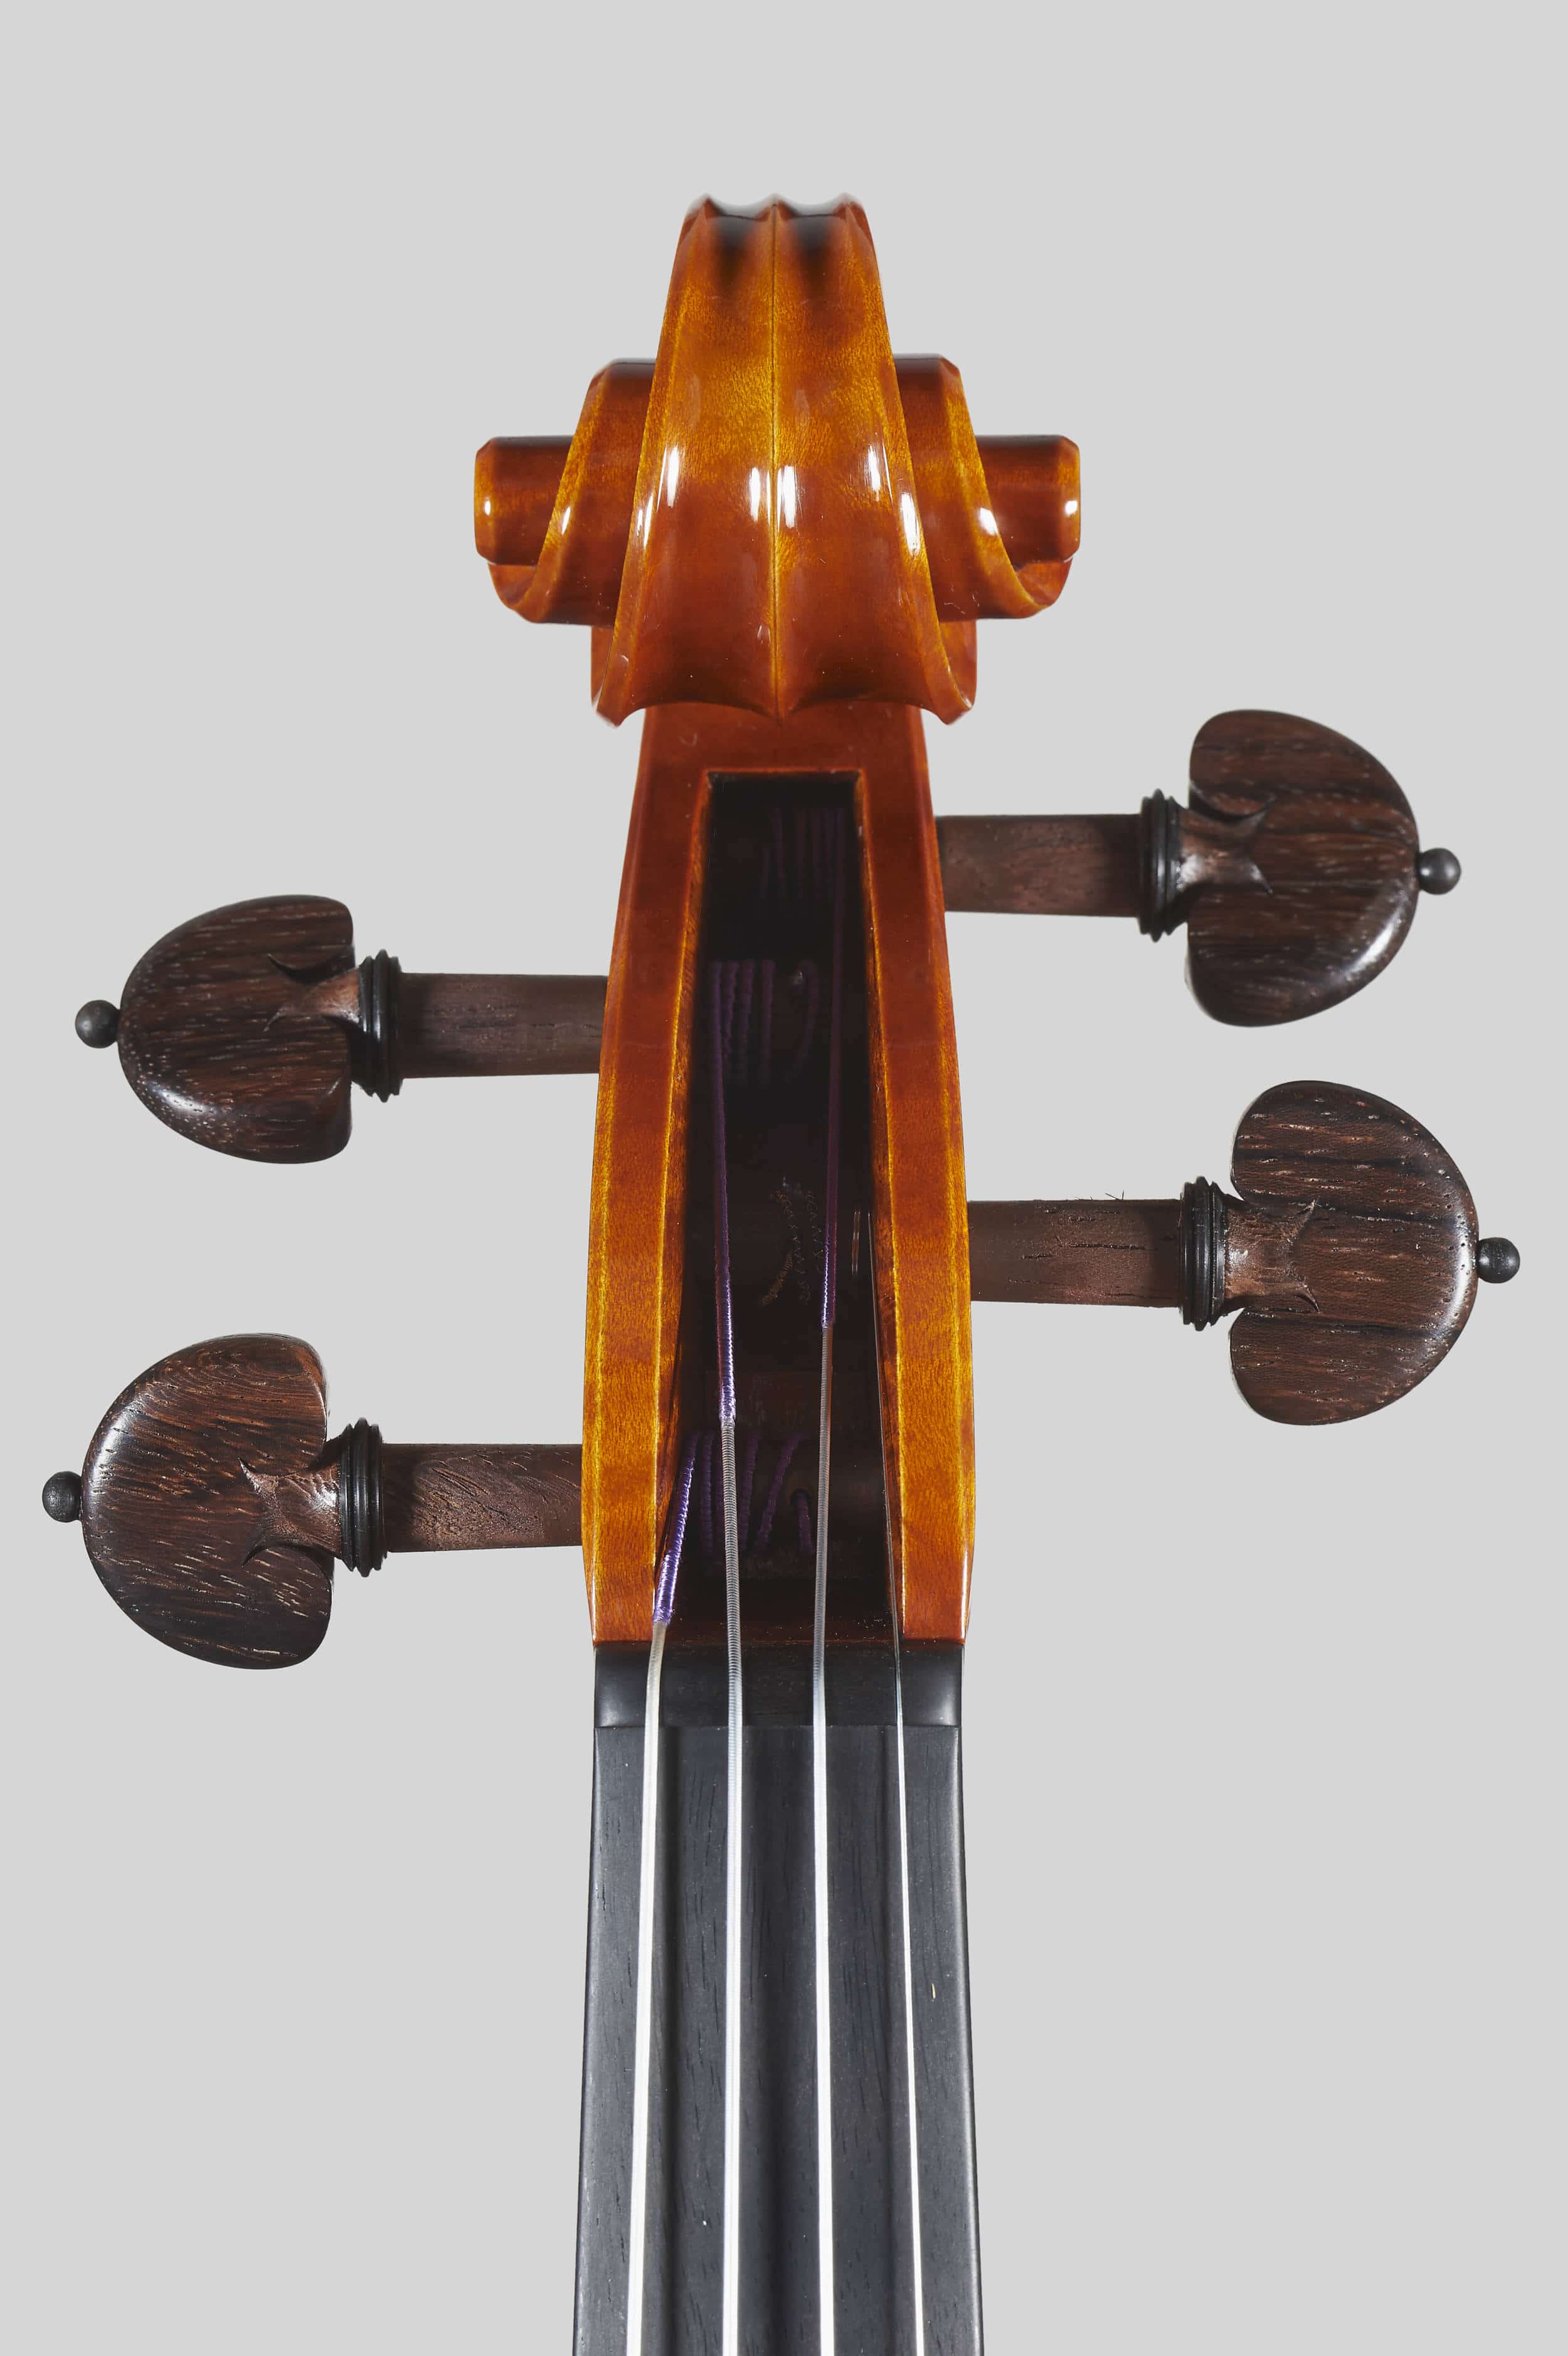 Anno 2016 - Violino modello A. Stradivari Rode, Le nestor 1733 - Testa fronte